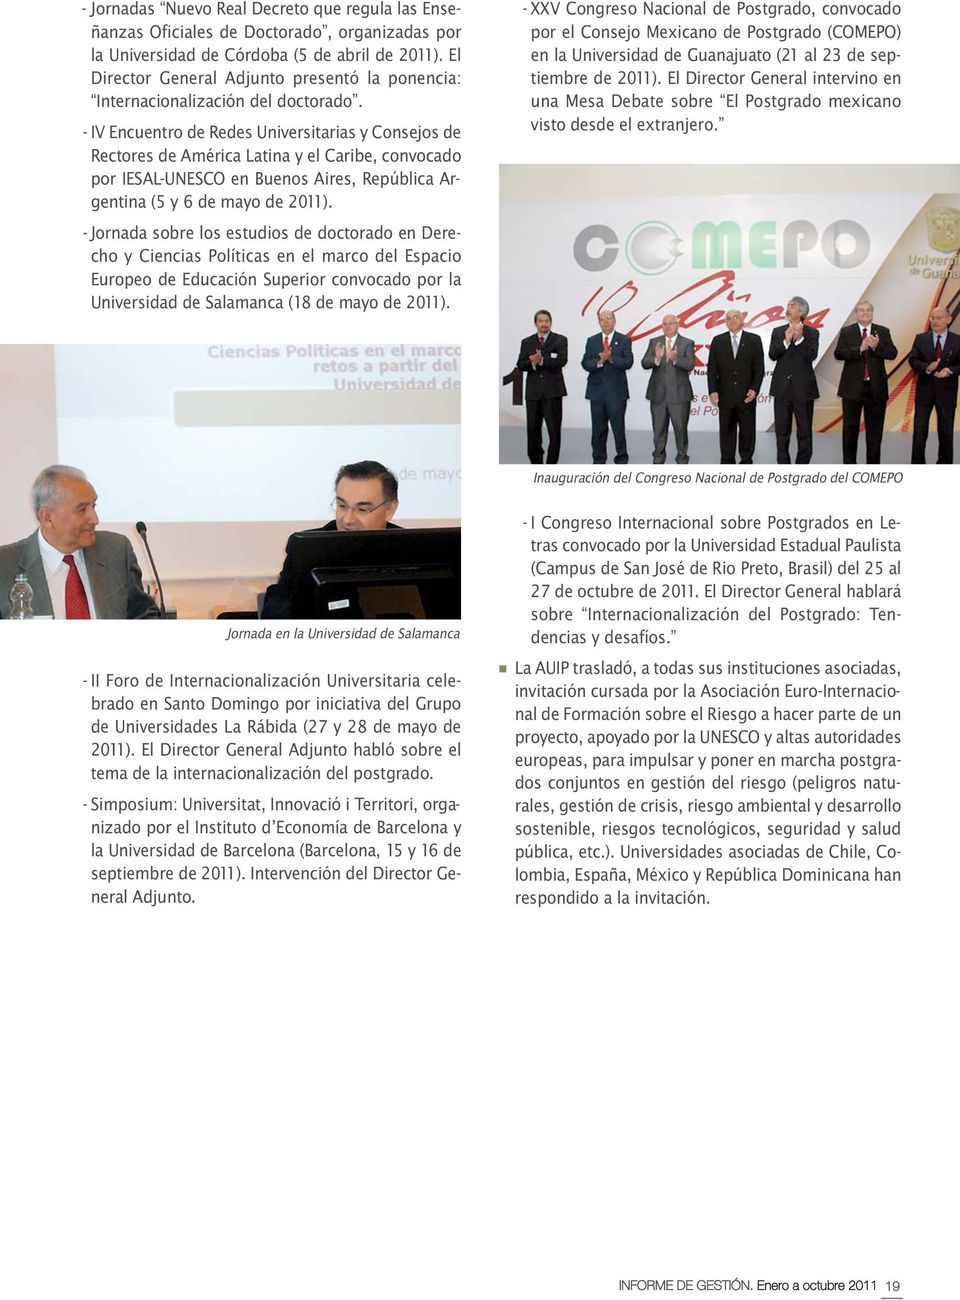 - IV Encuentro de Redes Universitarias y Consejos de Rectores de América Latina y el Caribe, convocado por IESAL-UNESCO en Buenos Aires, República Argentina (5 y 6 de mayo de 2011).